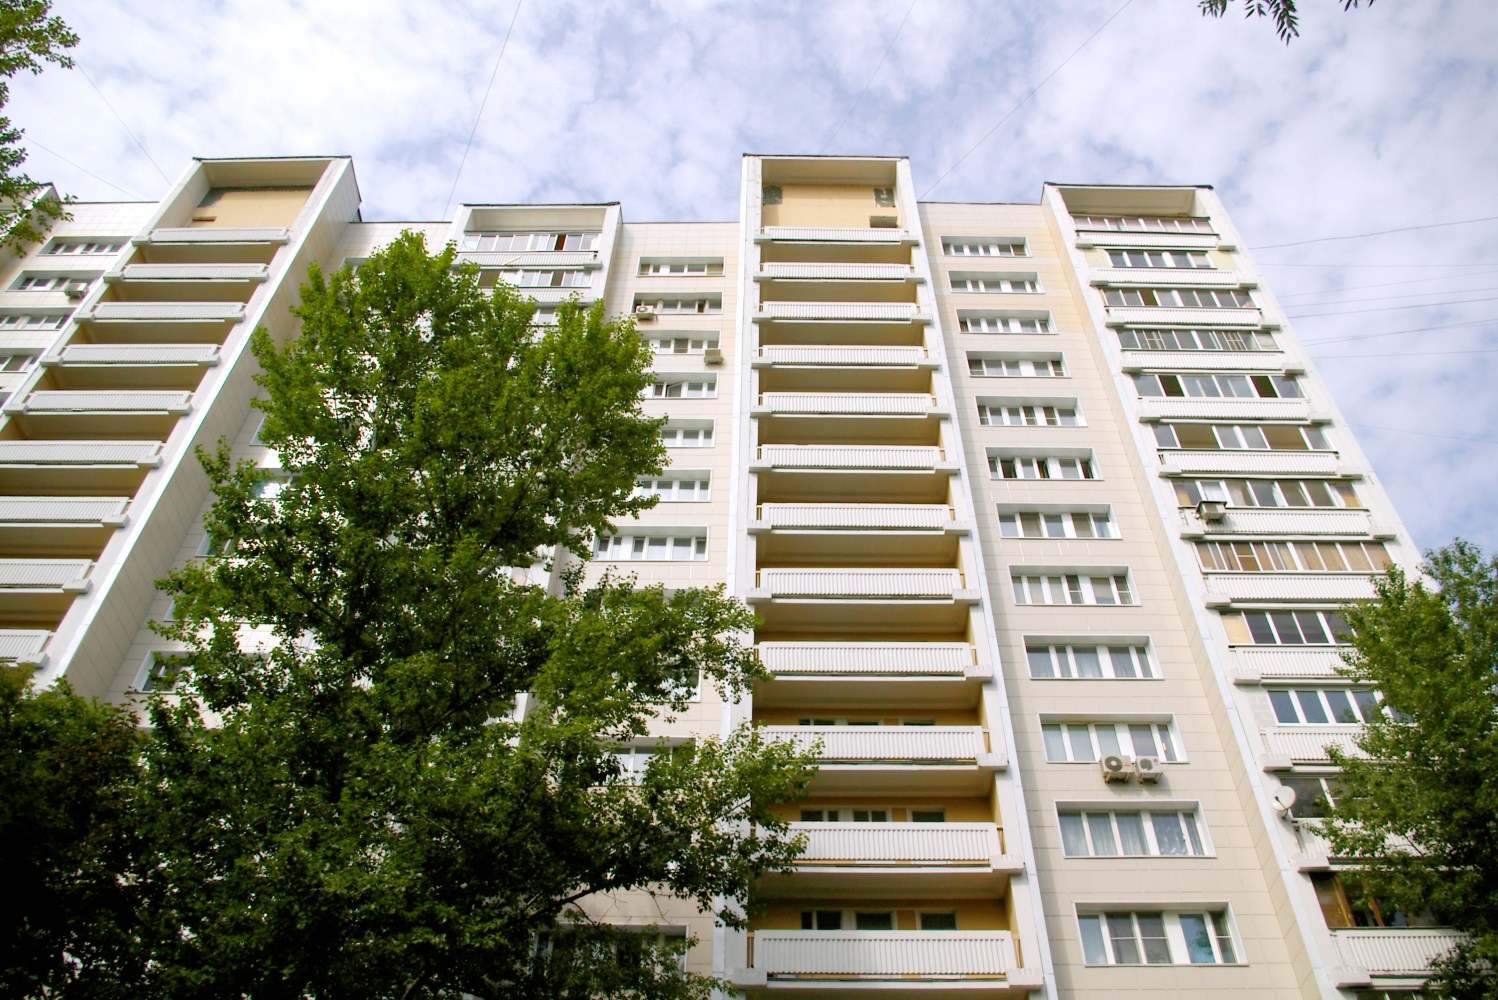 Число сделок с жильем в Москве в III квартале выросло на 18,5%